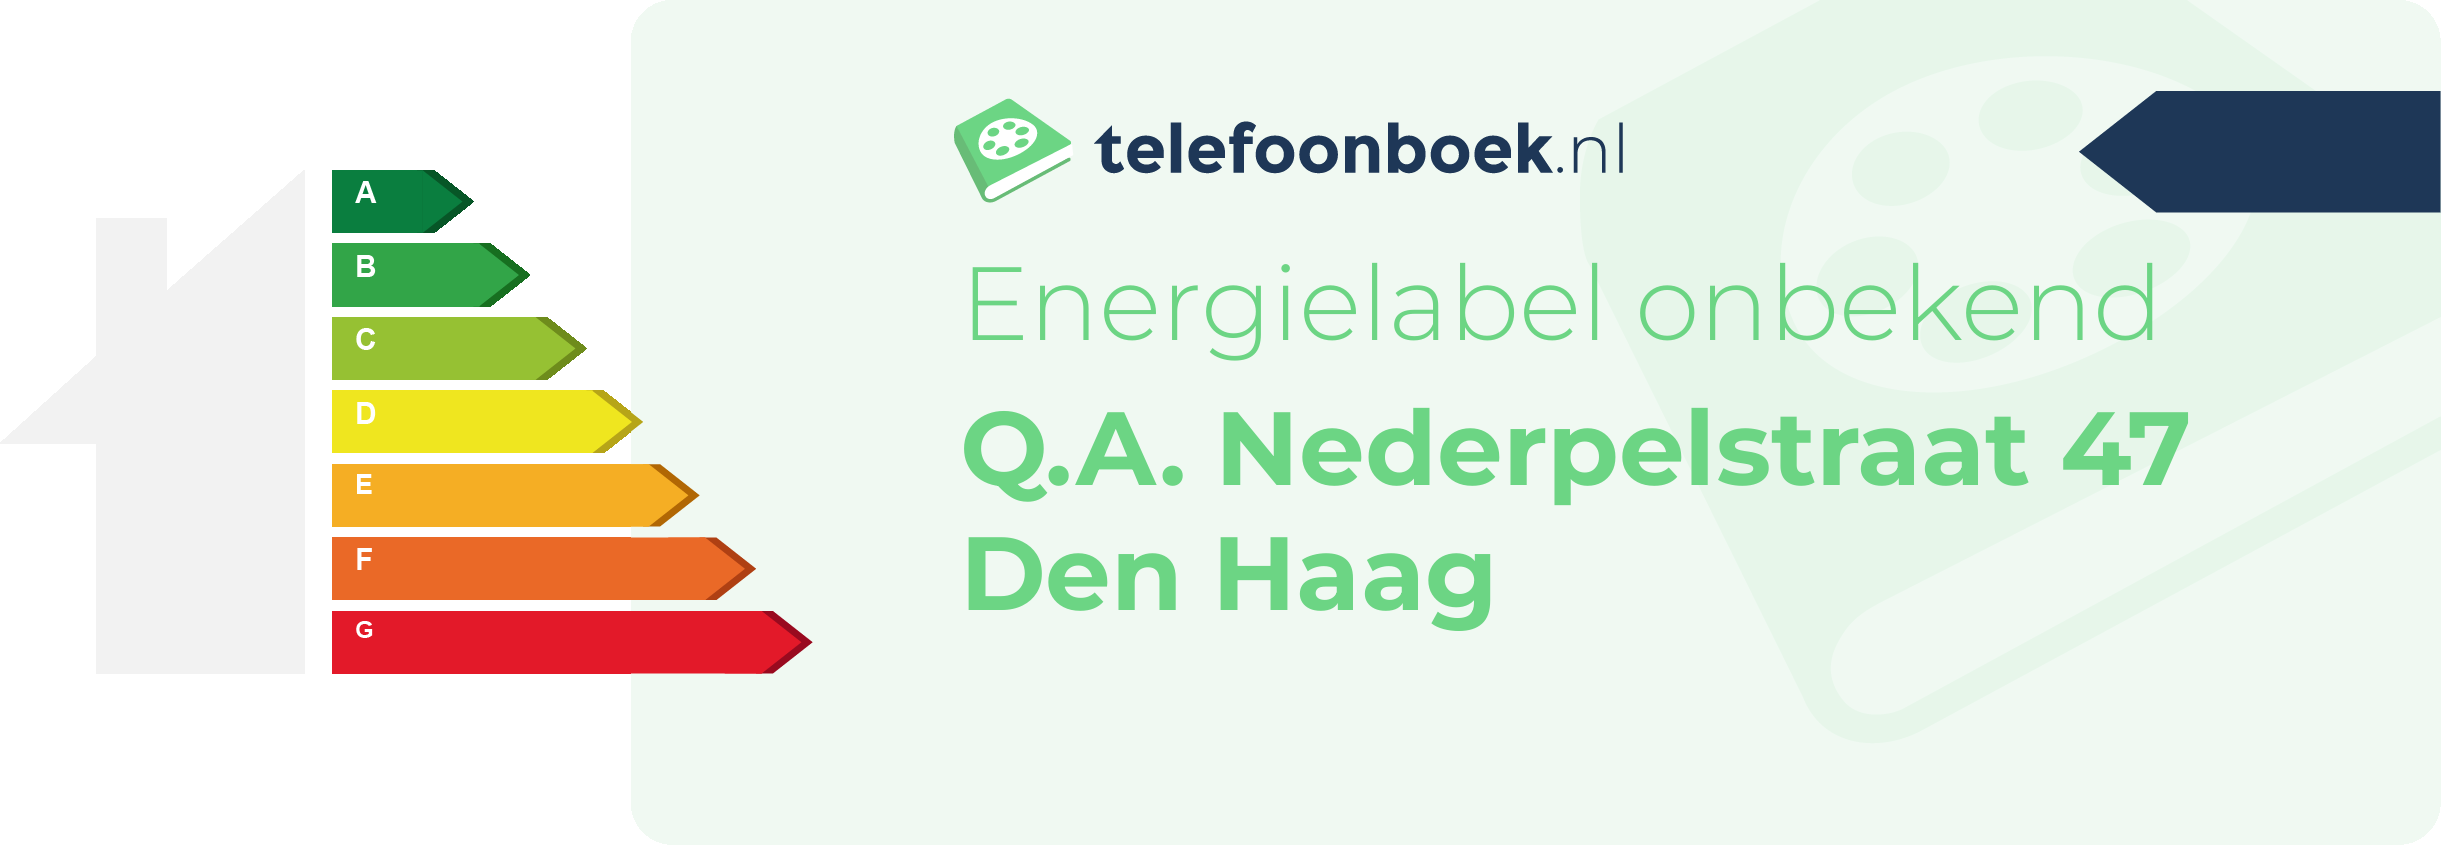 Energielabel Q.A. Nederpelstraat 47 Den Haag